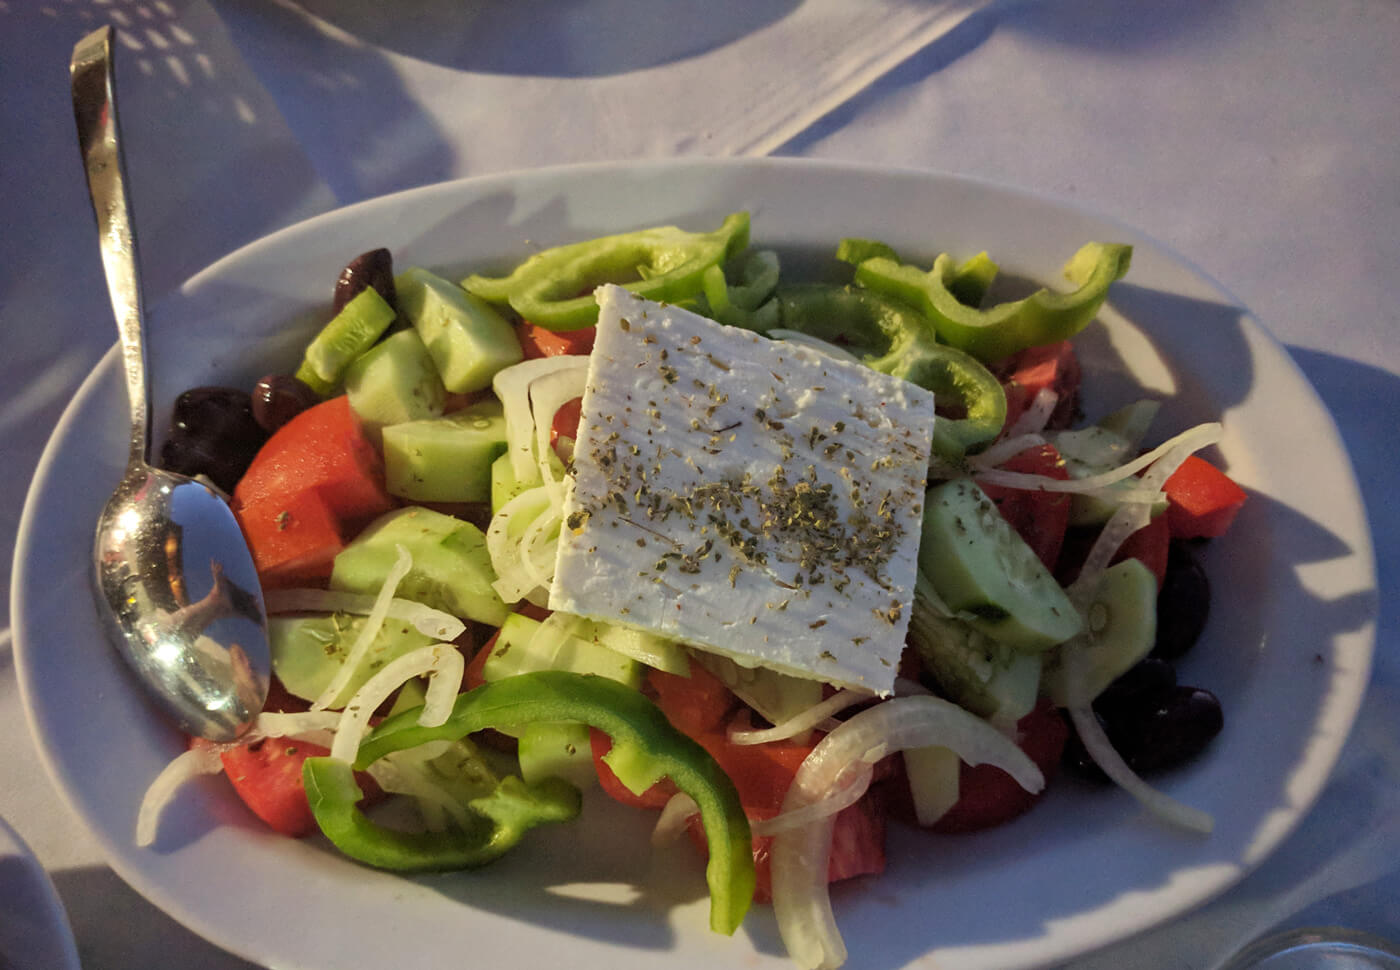 Греческий салат или крестьянский салат - это самый популярный салат в греческой кухне